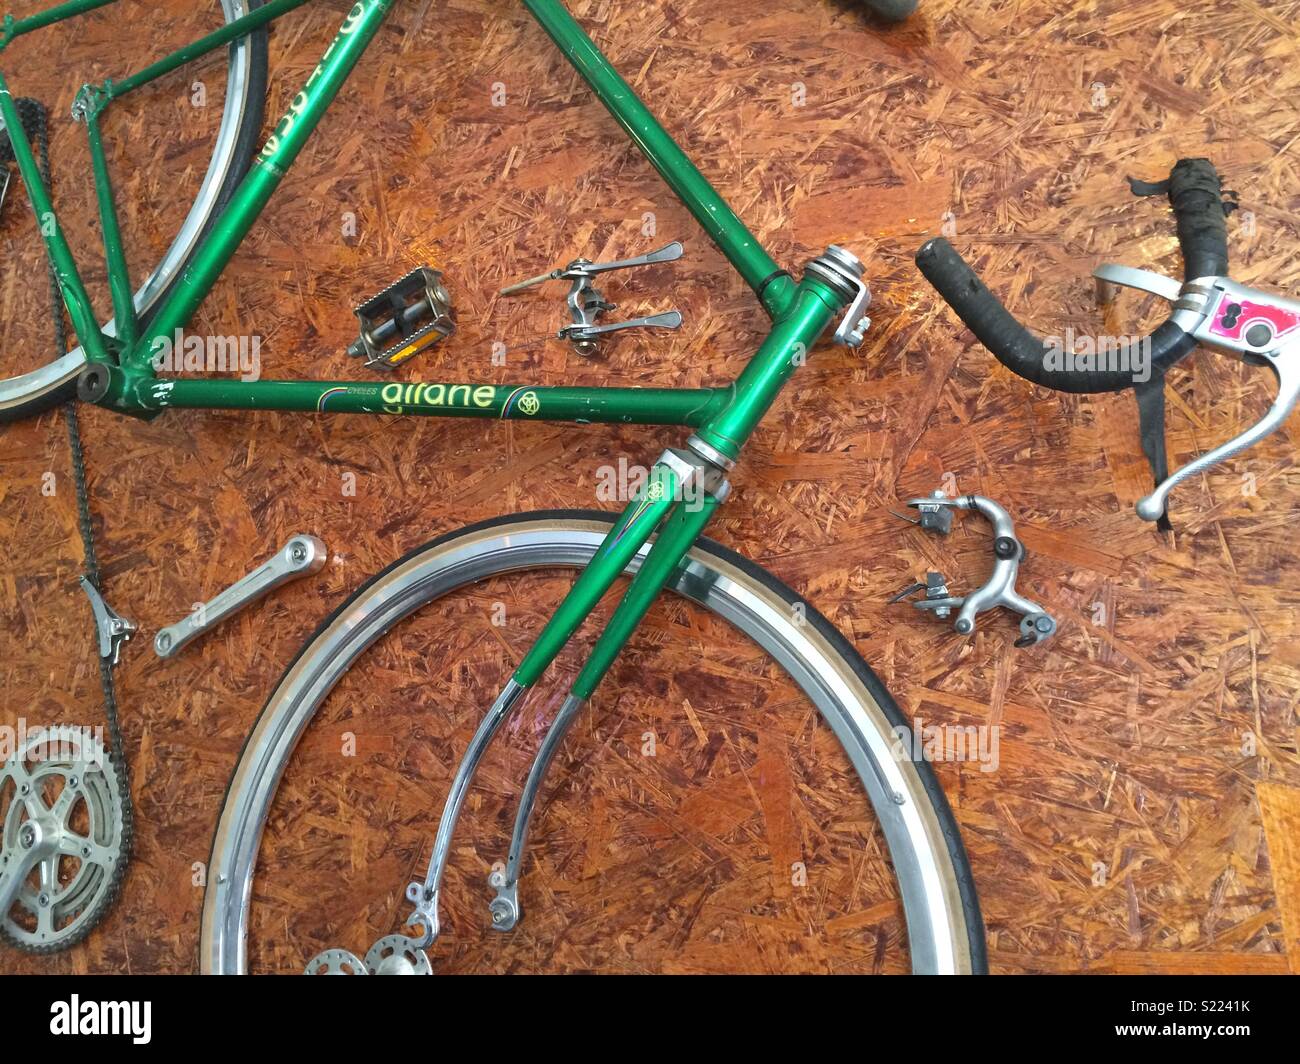 Ich möchte mein Fahrrad zu fahren, ich will mein Fahrrad zu fahren  Stockfotografie - Alamy